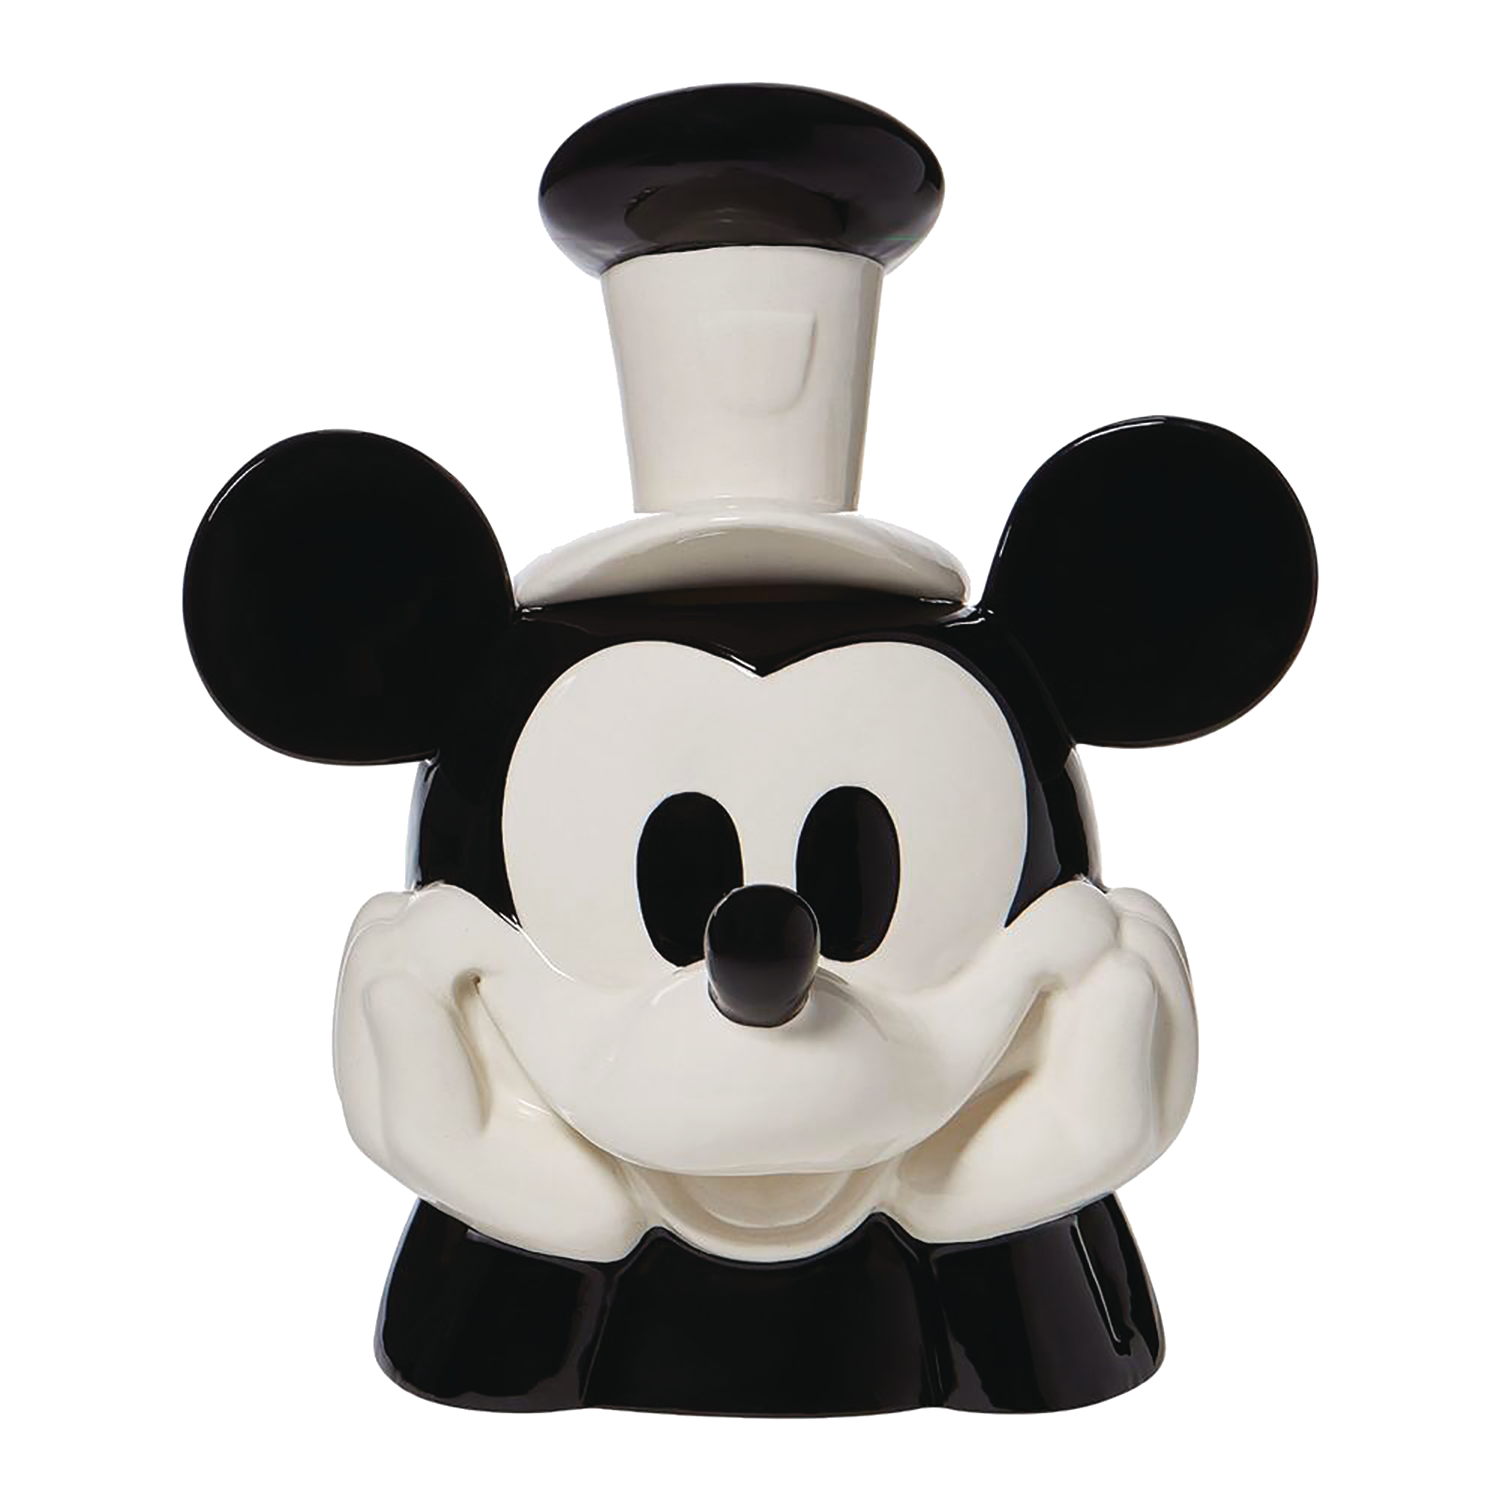 Disney Steamboat Willie Cookie Jar